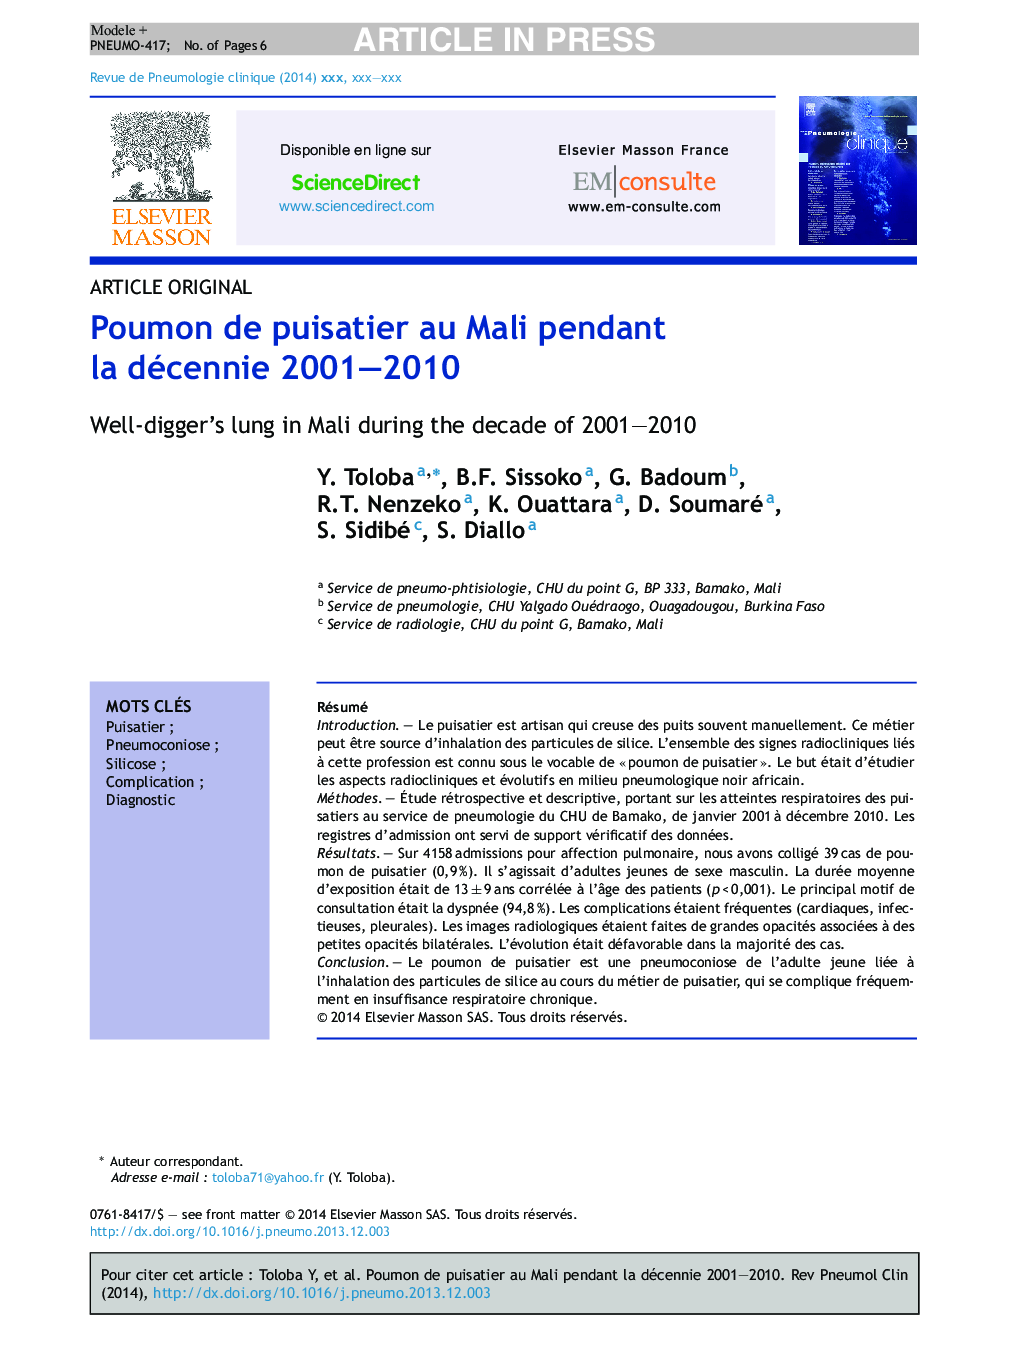 Poumon de puisatier au Mali pendant la décennie 2001-2010